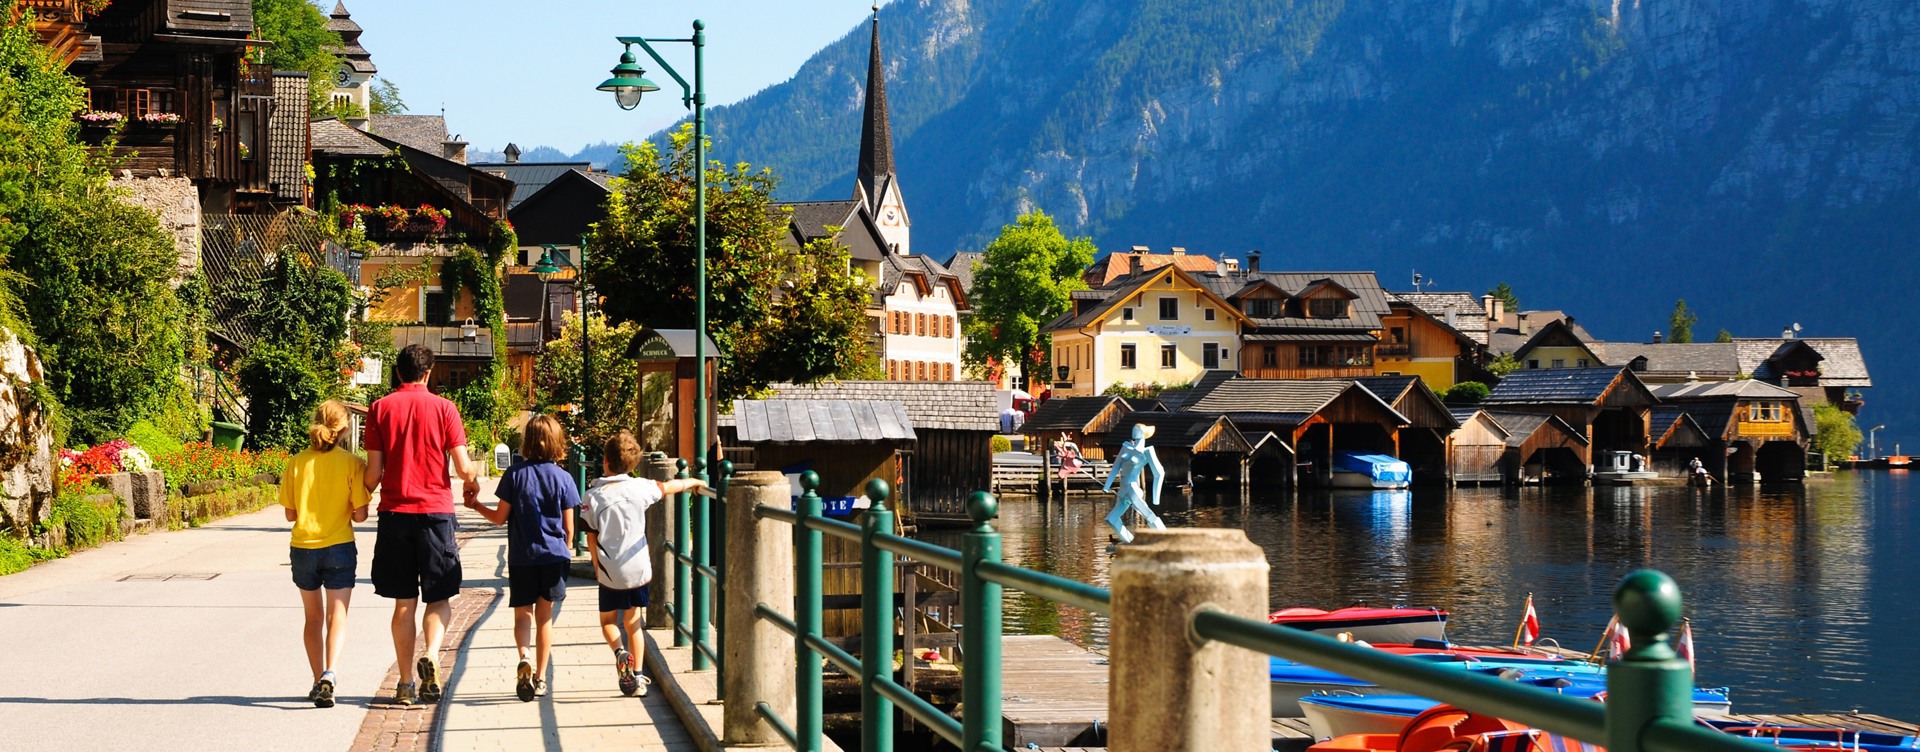 De Oostenrijkse Alpen:
de ideale zomerbestemming